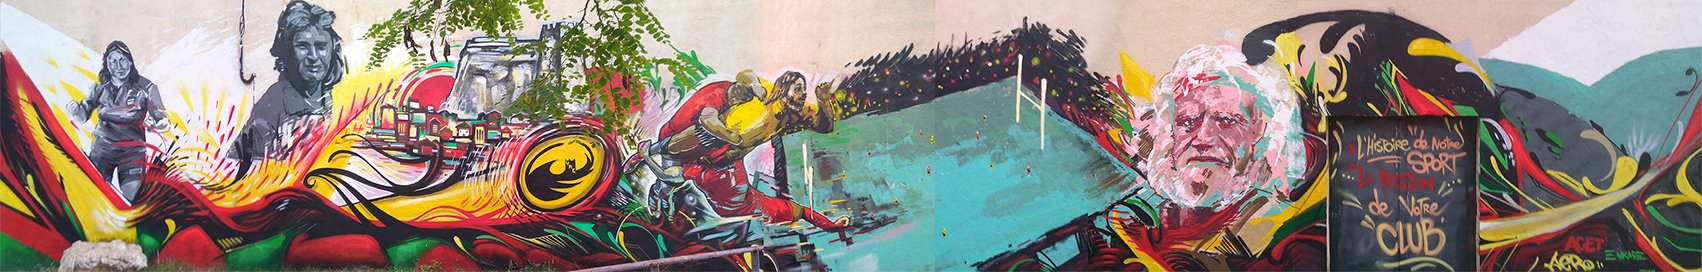 Fresque en peinture street art sur le sport par Enkage, Acet et Reflex